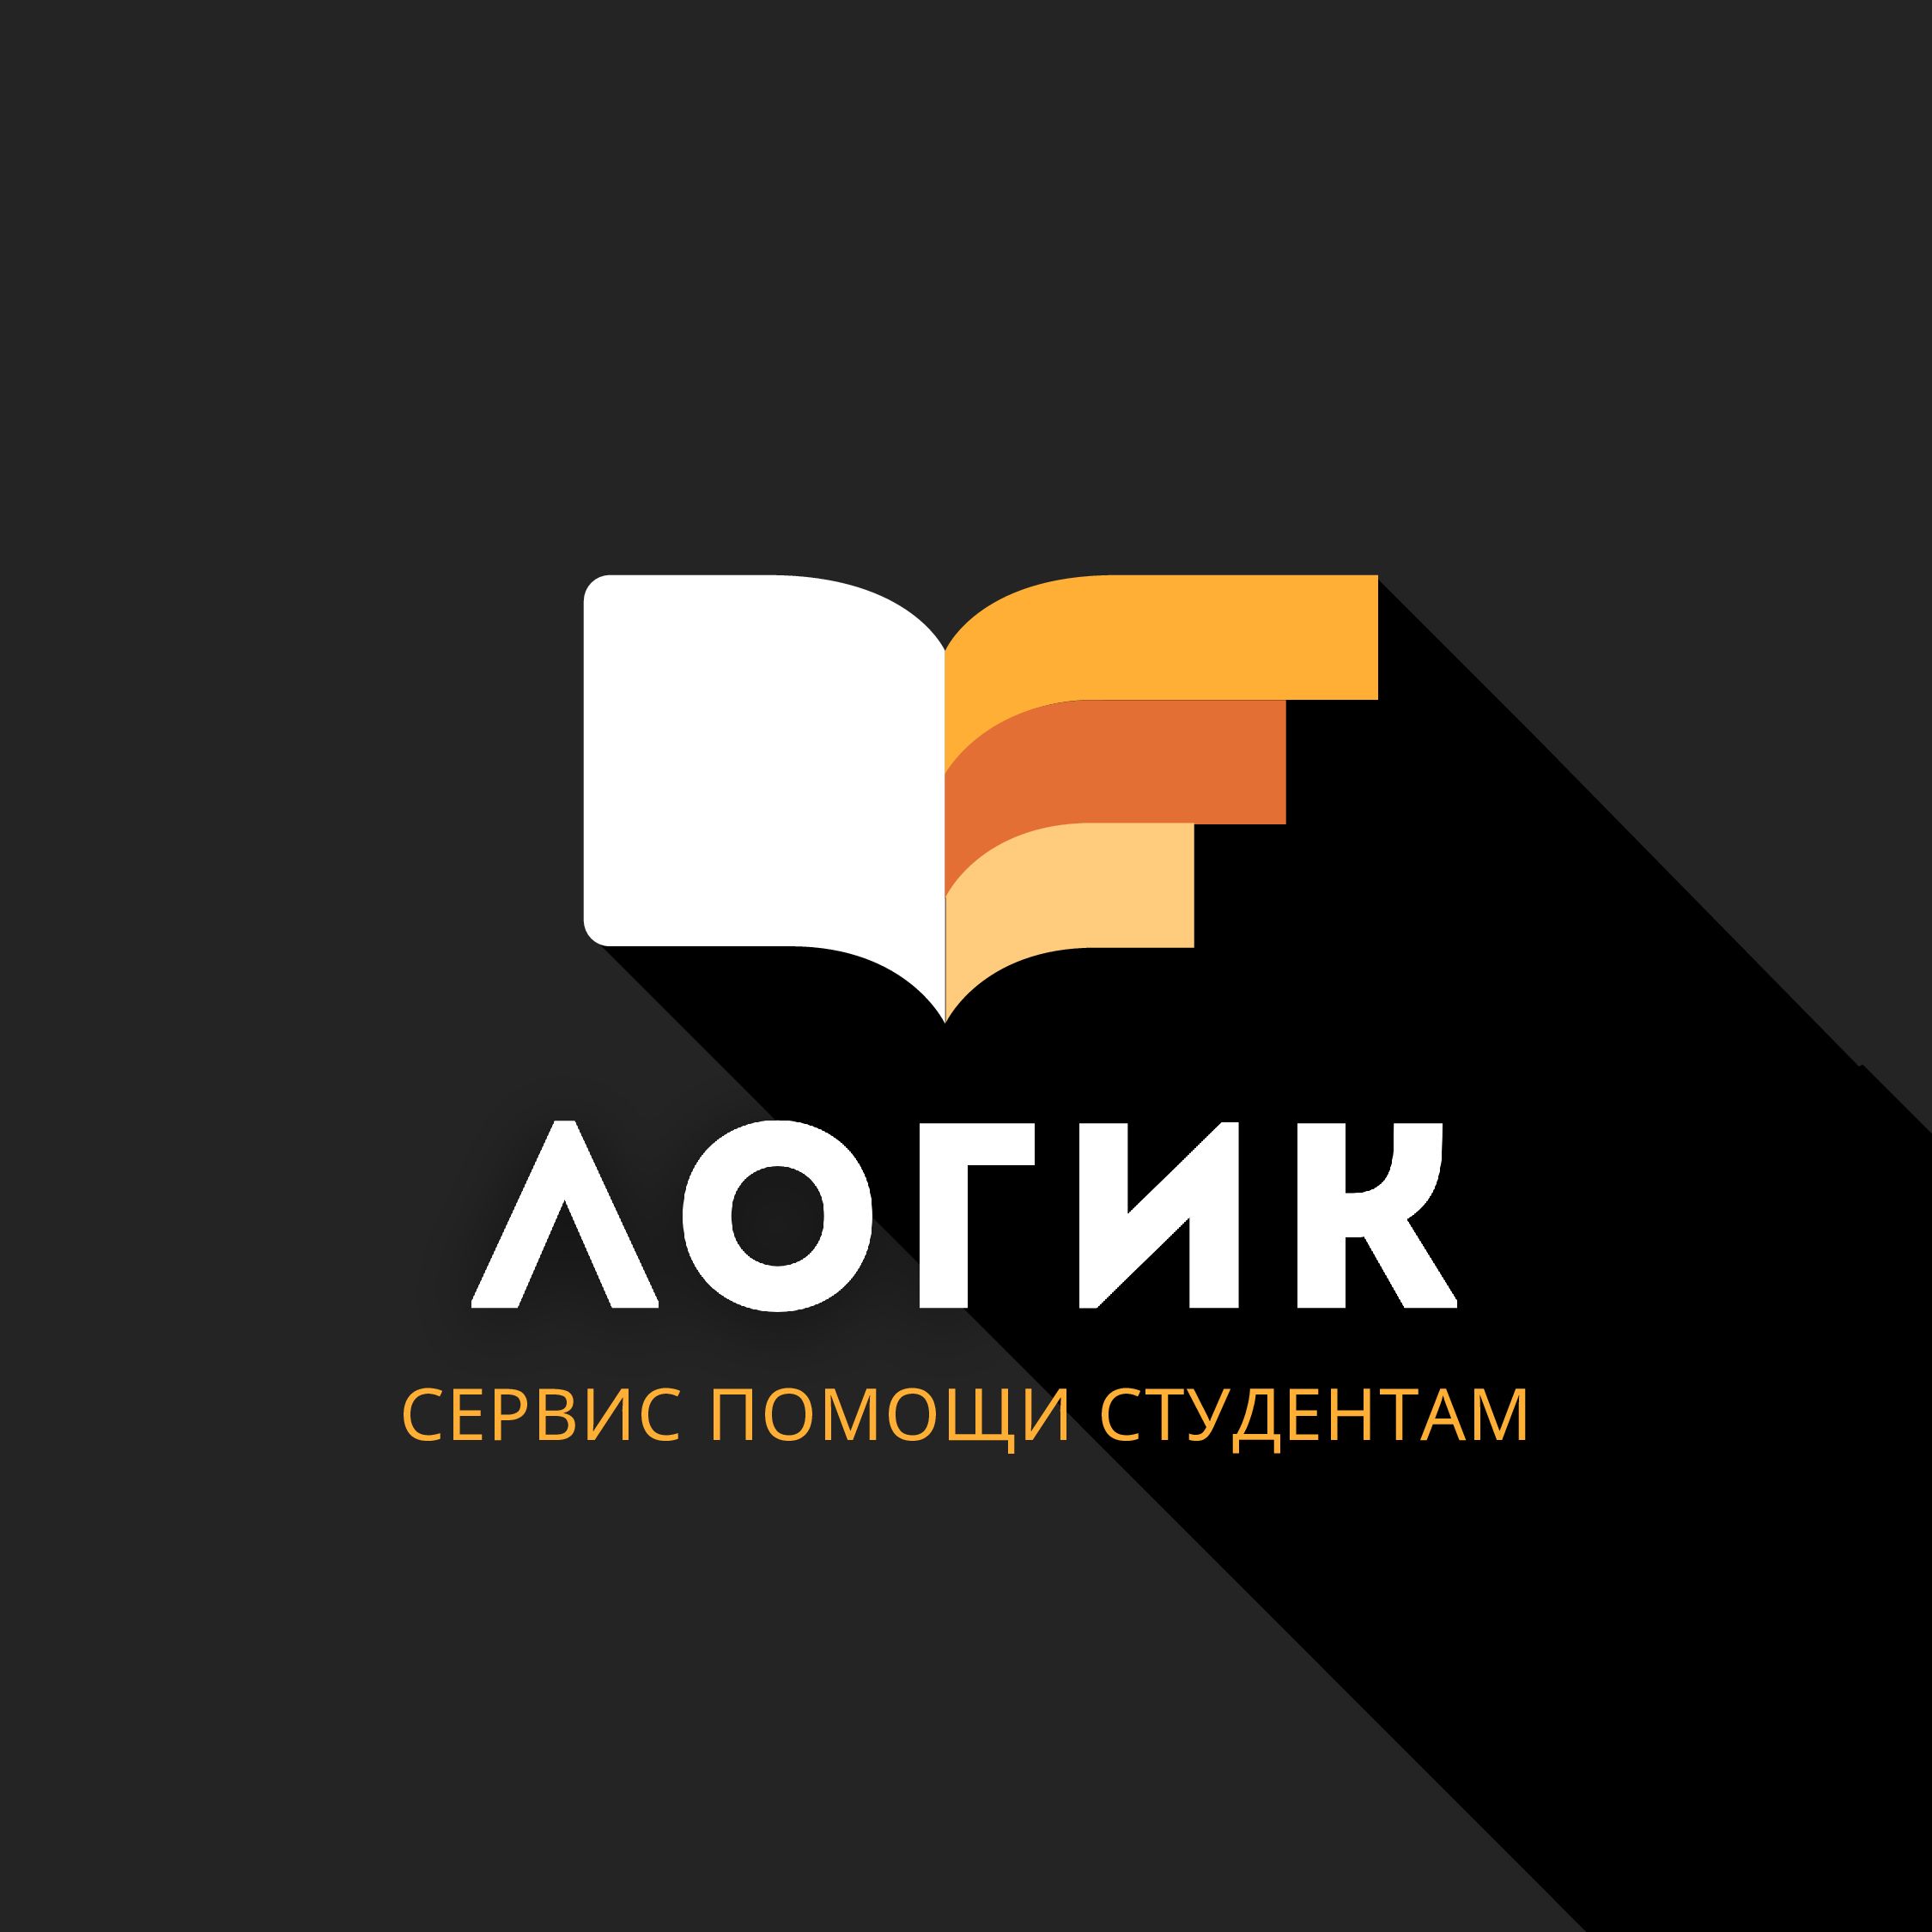 Логик — сервис помощи студентам и аспирантам в Иркутске